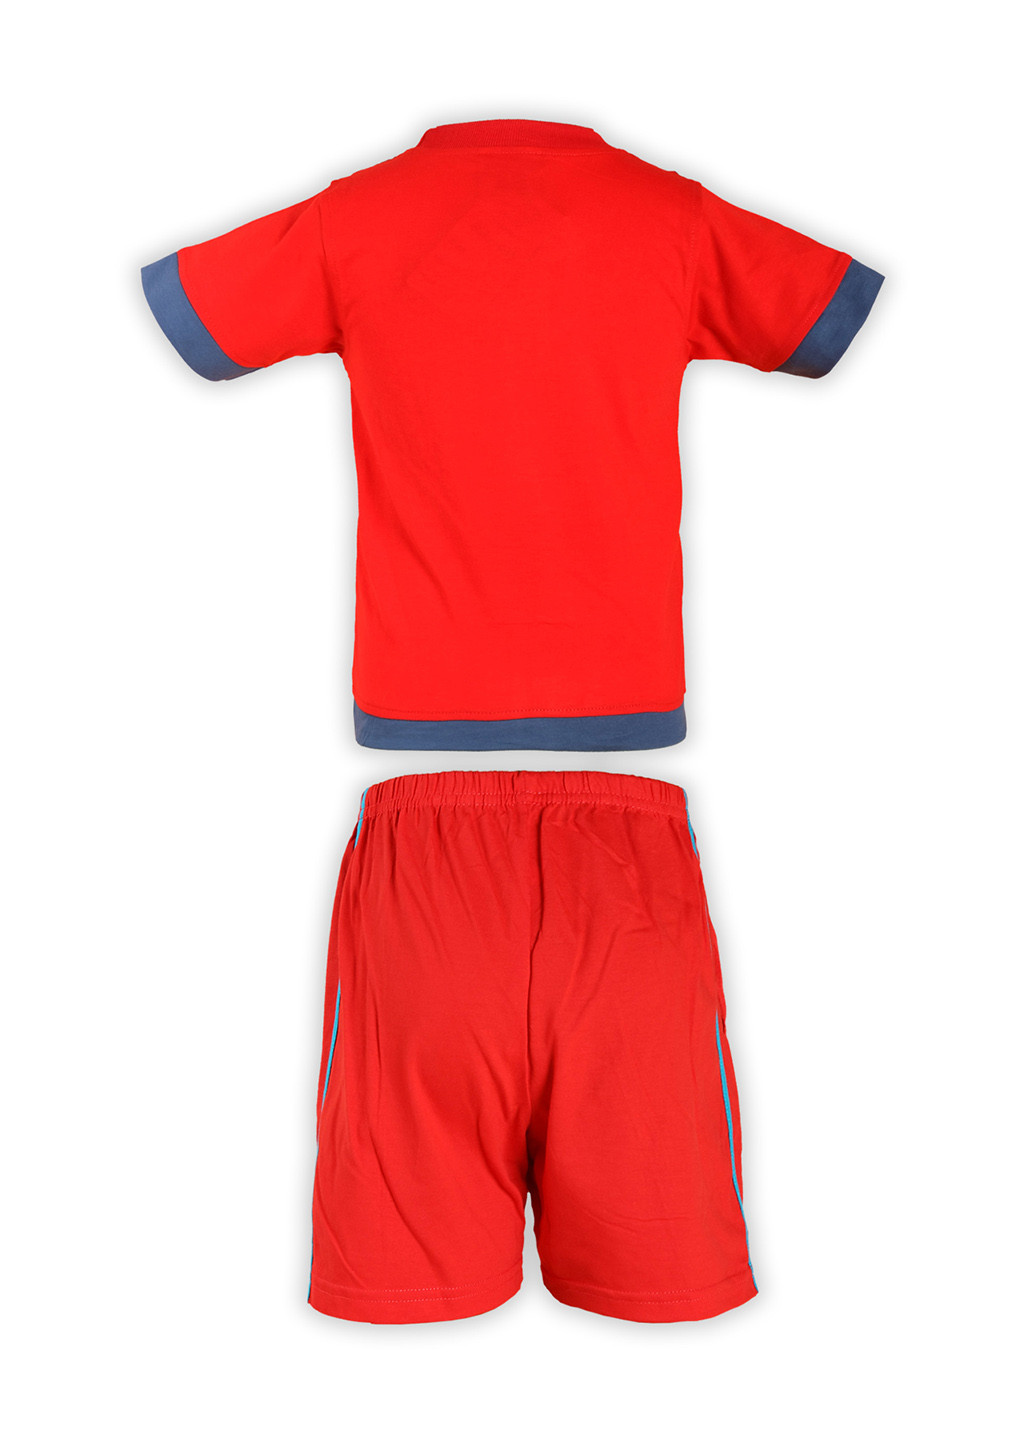 Красный летний костюм (футболка, шорты) брючный Fashion Children